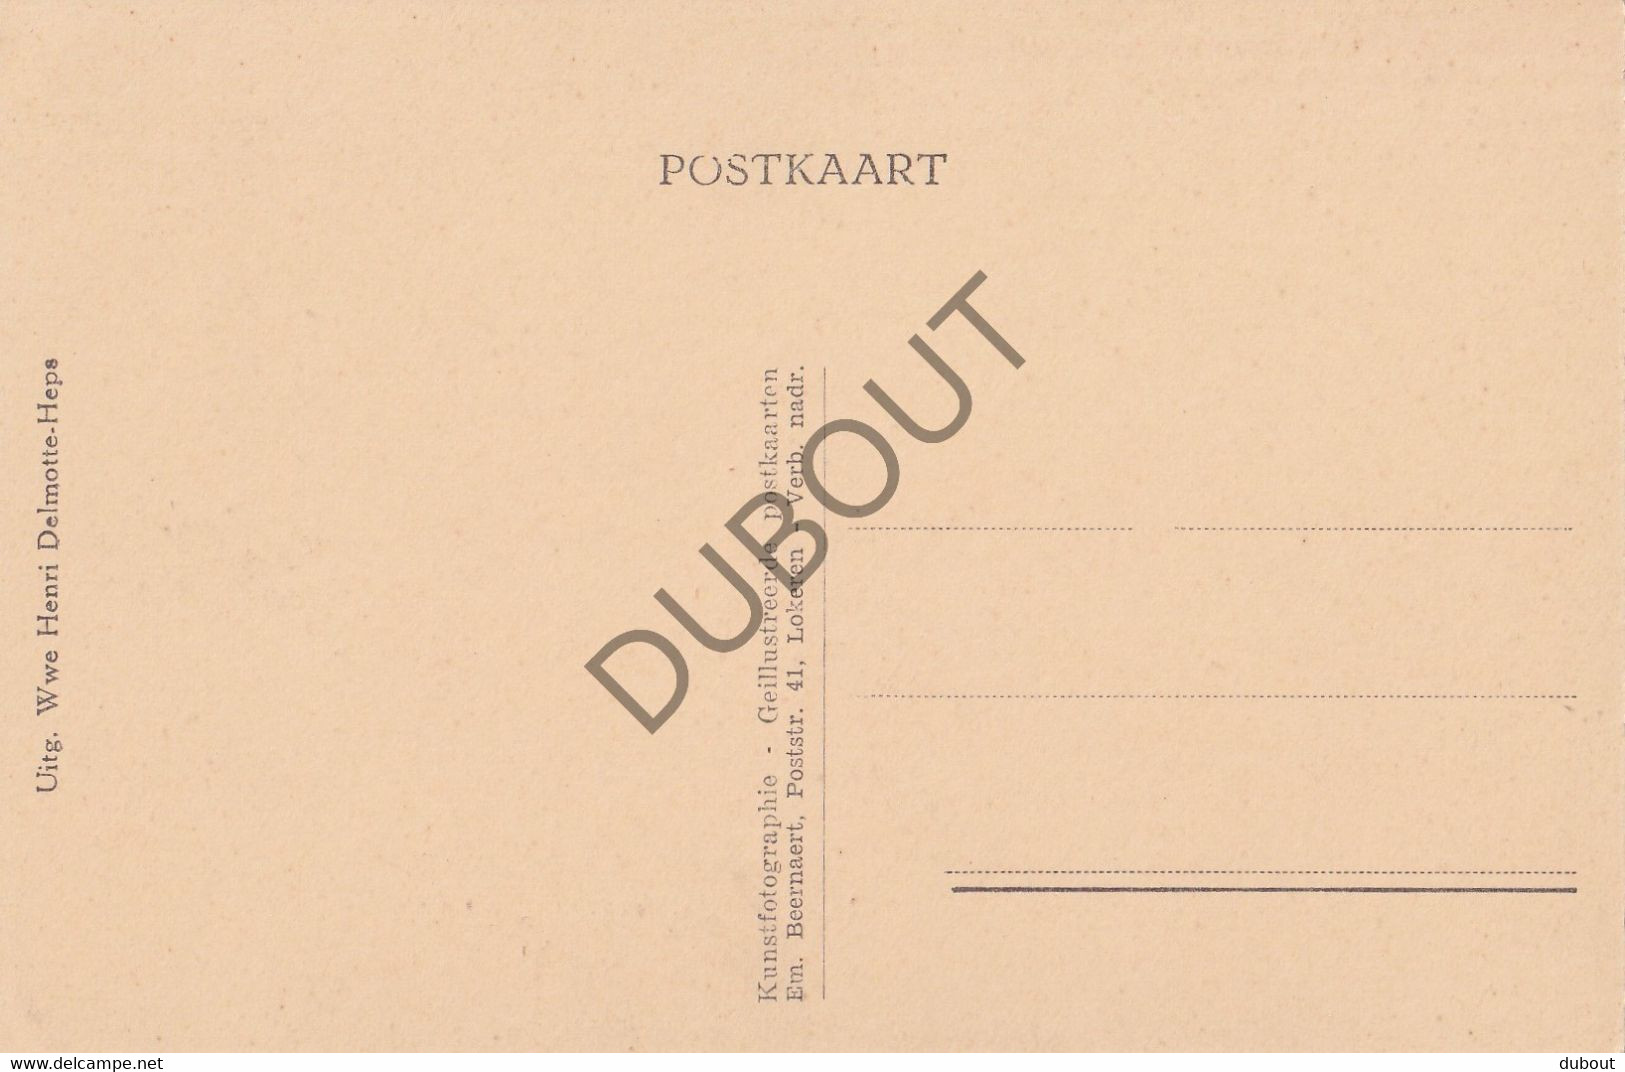 Postkaart/Carte Postale - Butsel - Boutersem -  Kerk (C3300) - Boutersem